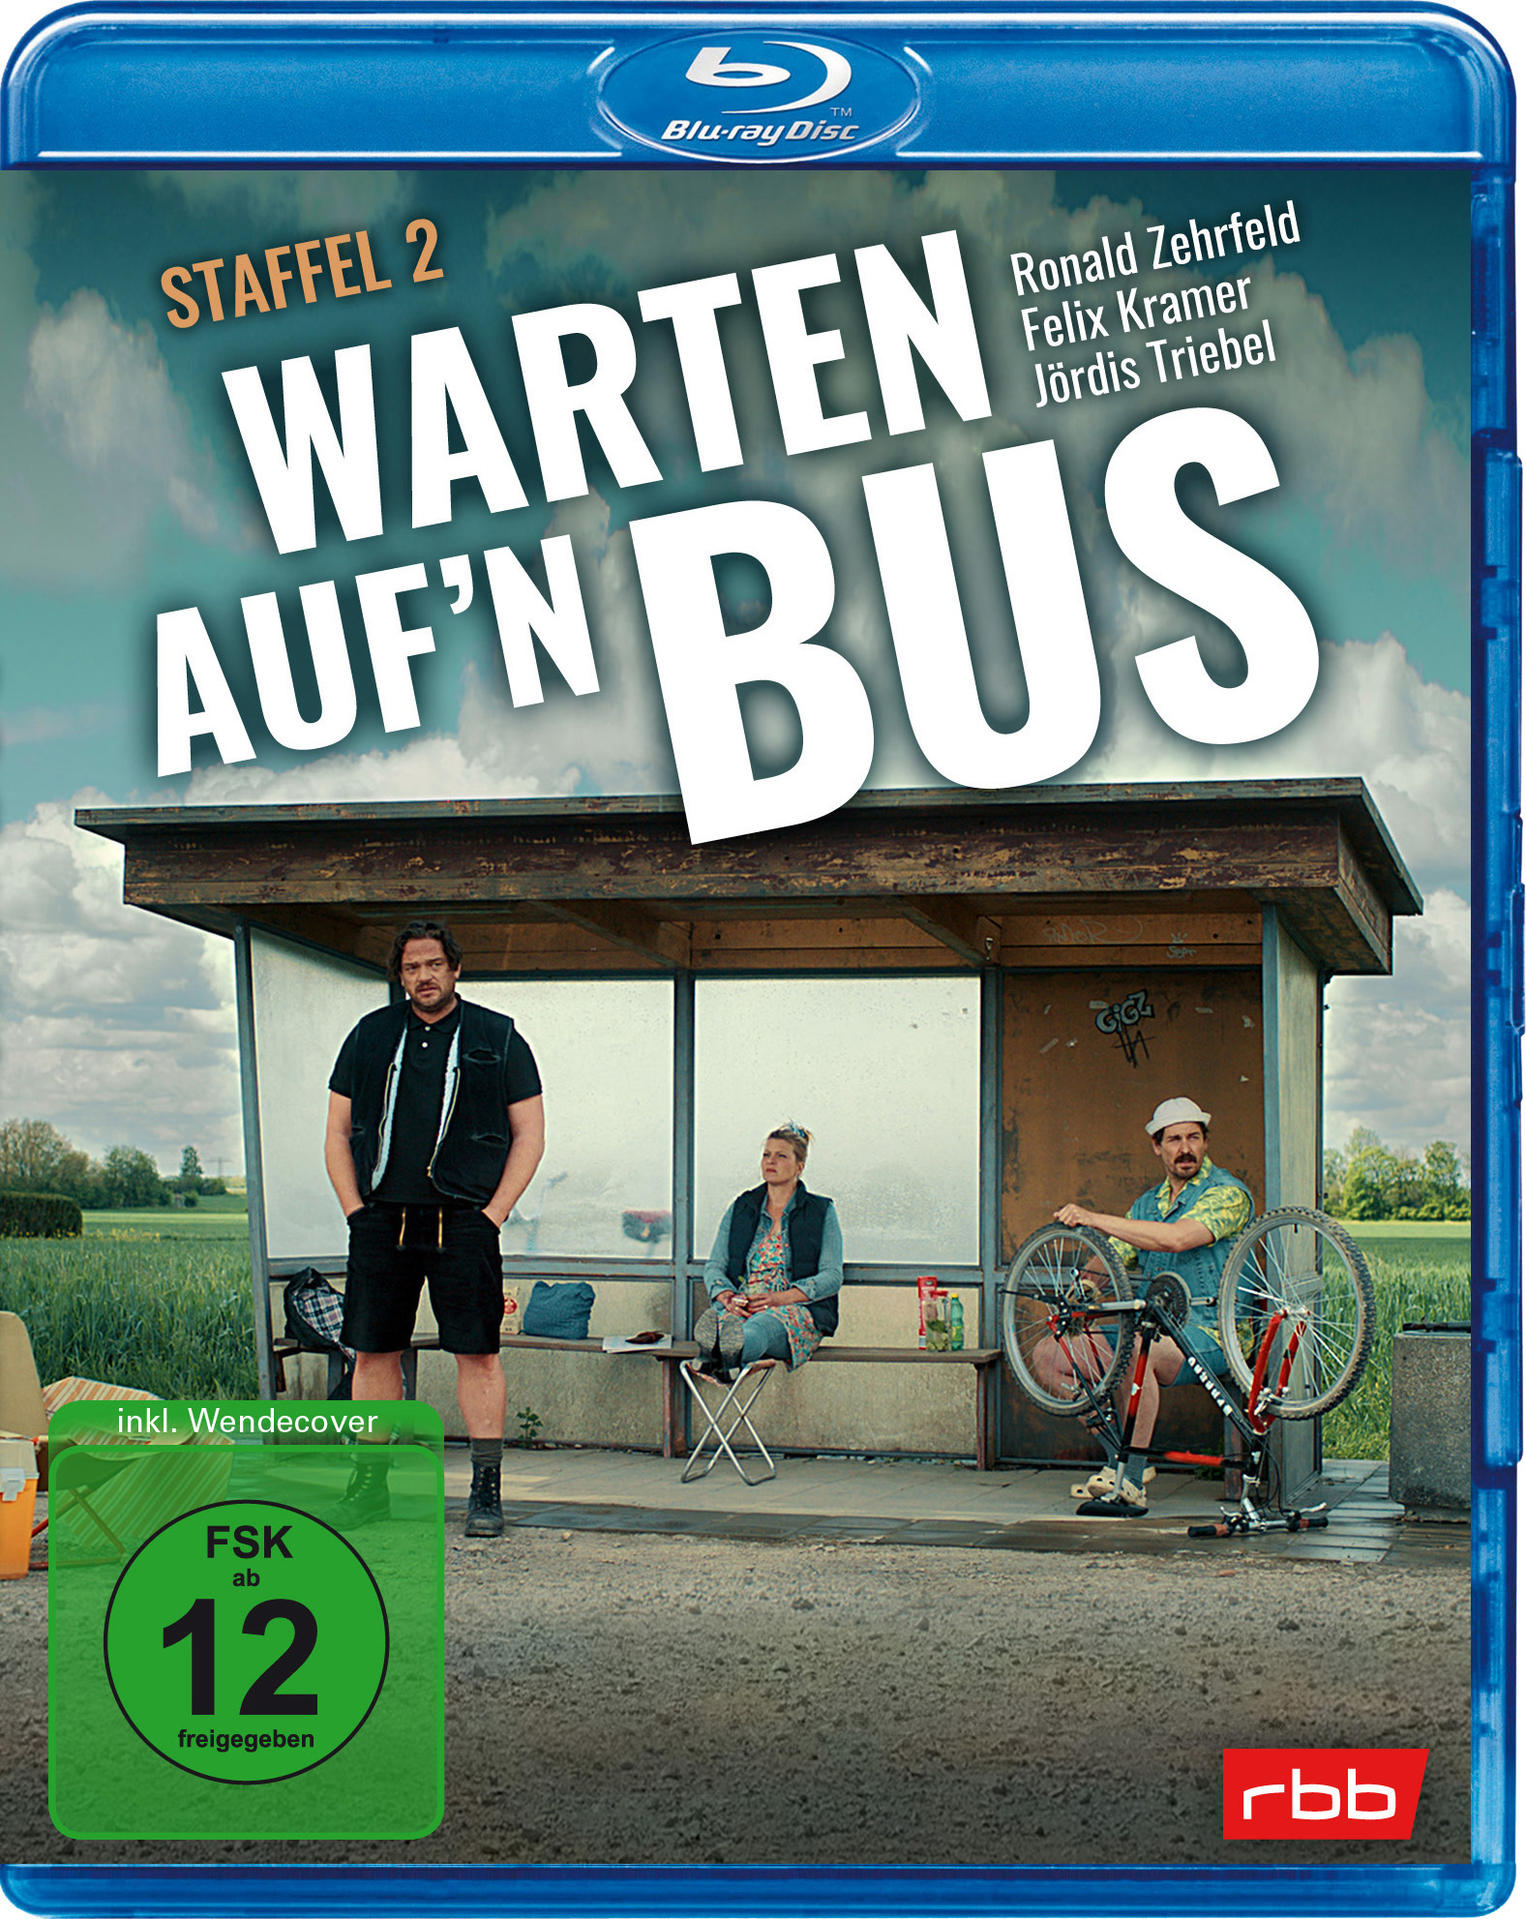 Staffel auf\'n Bus Warten Blu-ray - 2